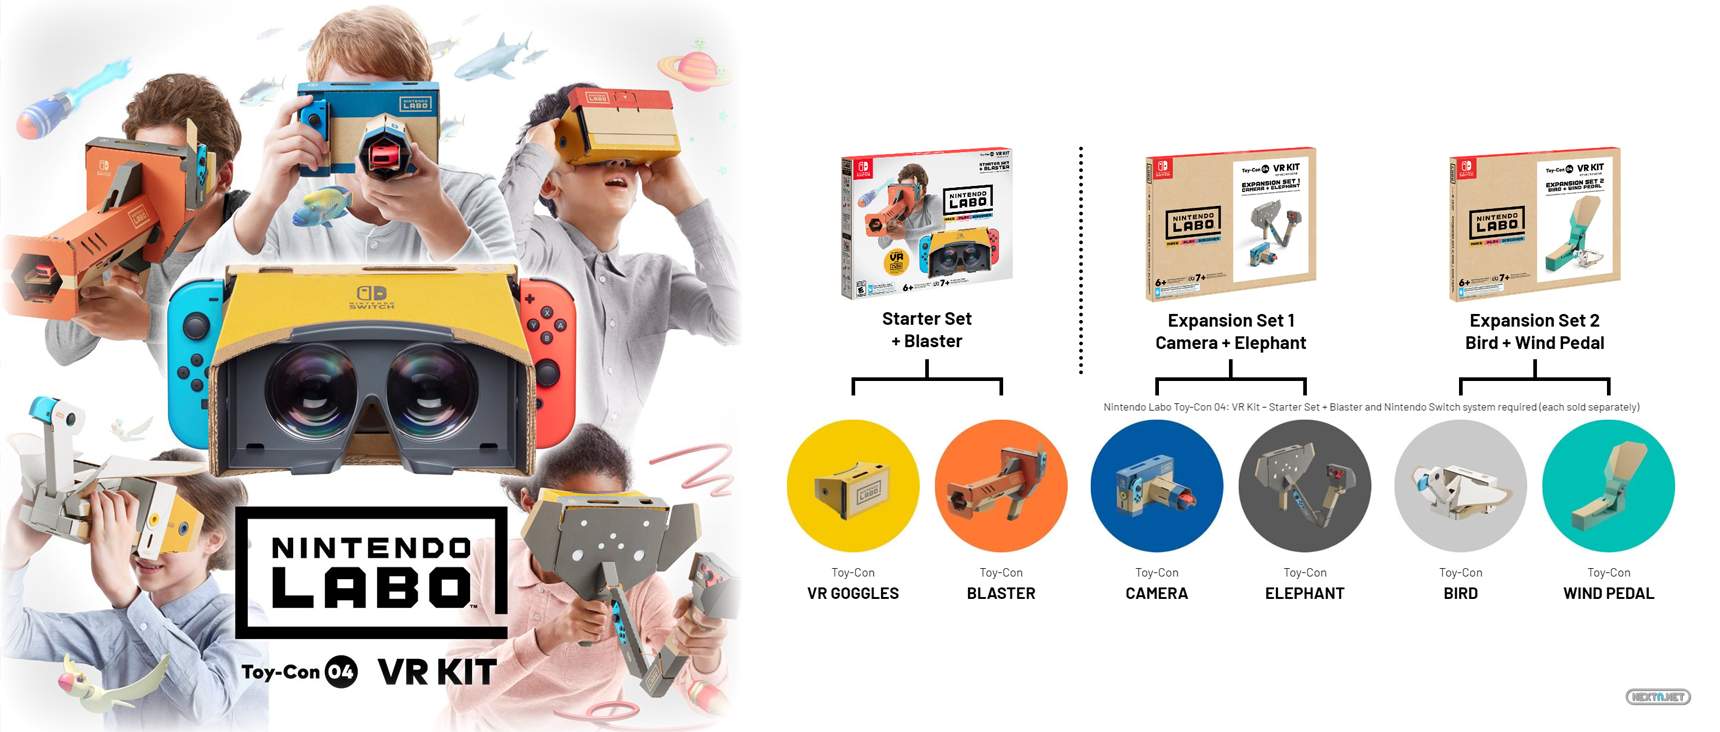 Nintendo Labo Toy-Con 04: VR Kit llevará la realidad virtual a